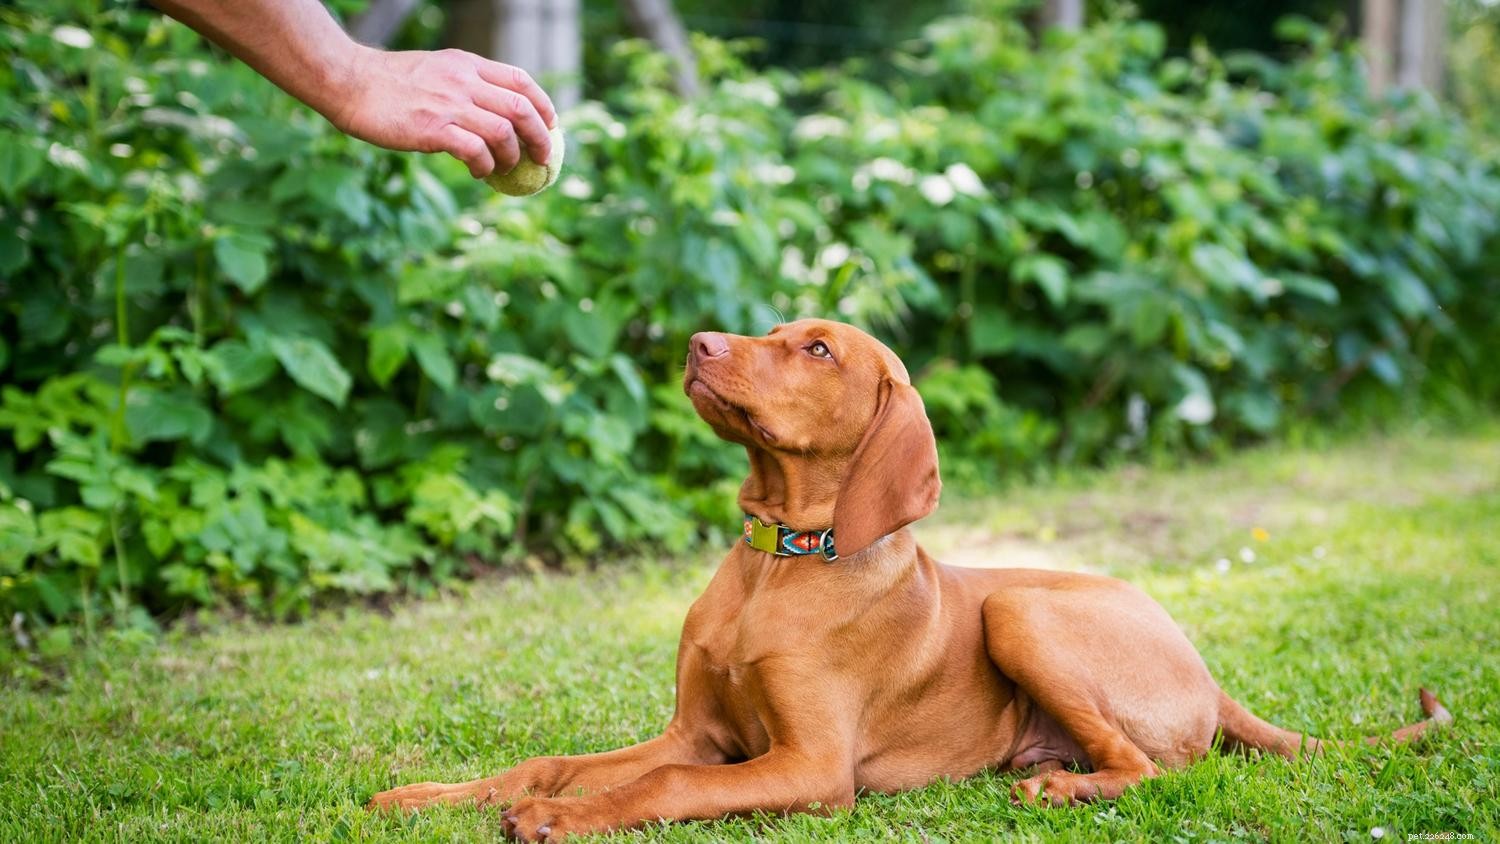 Come insegnare al tuo cane a sdraiarsi:una guida